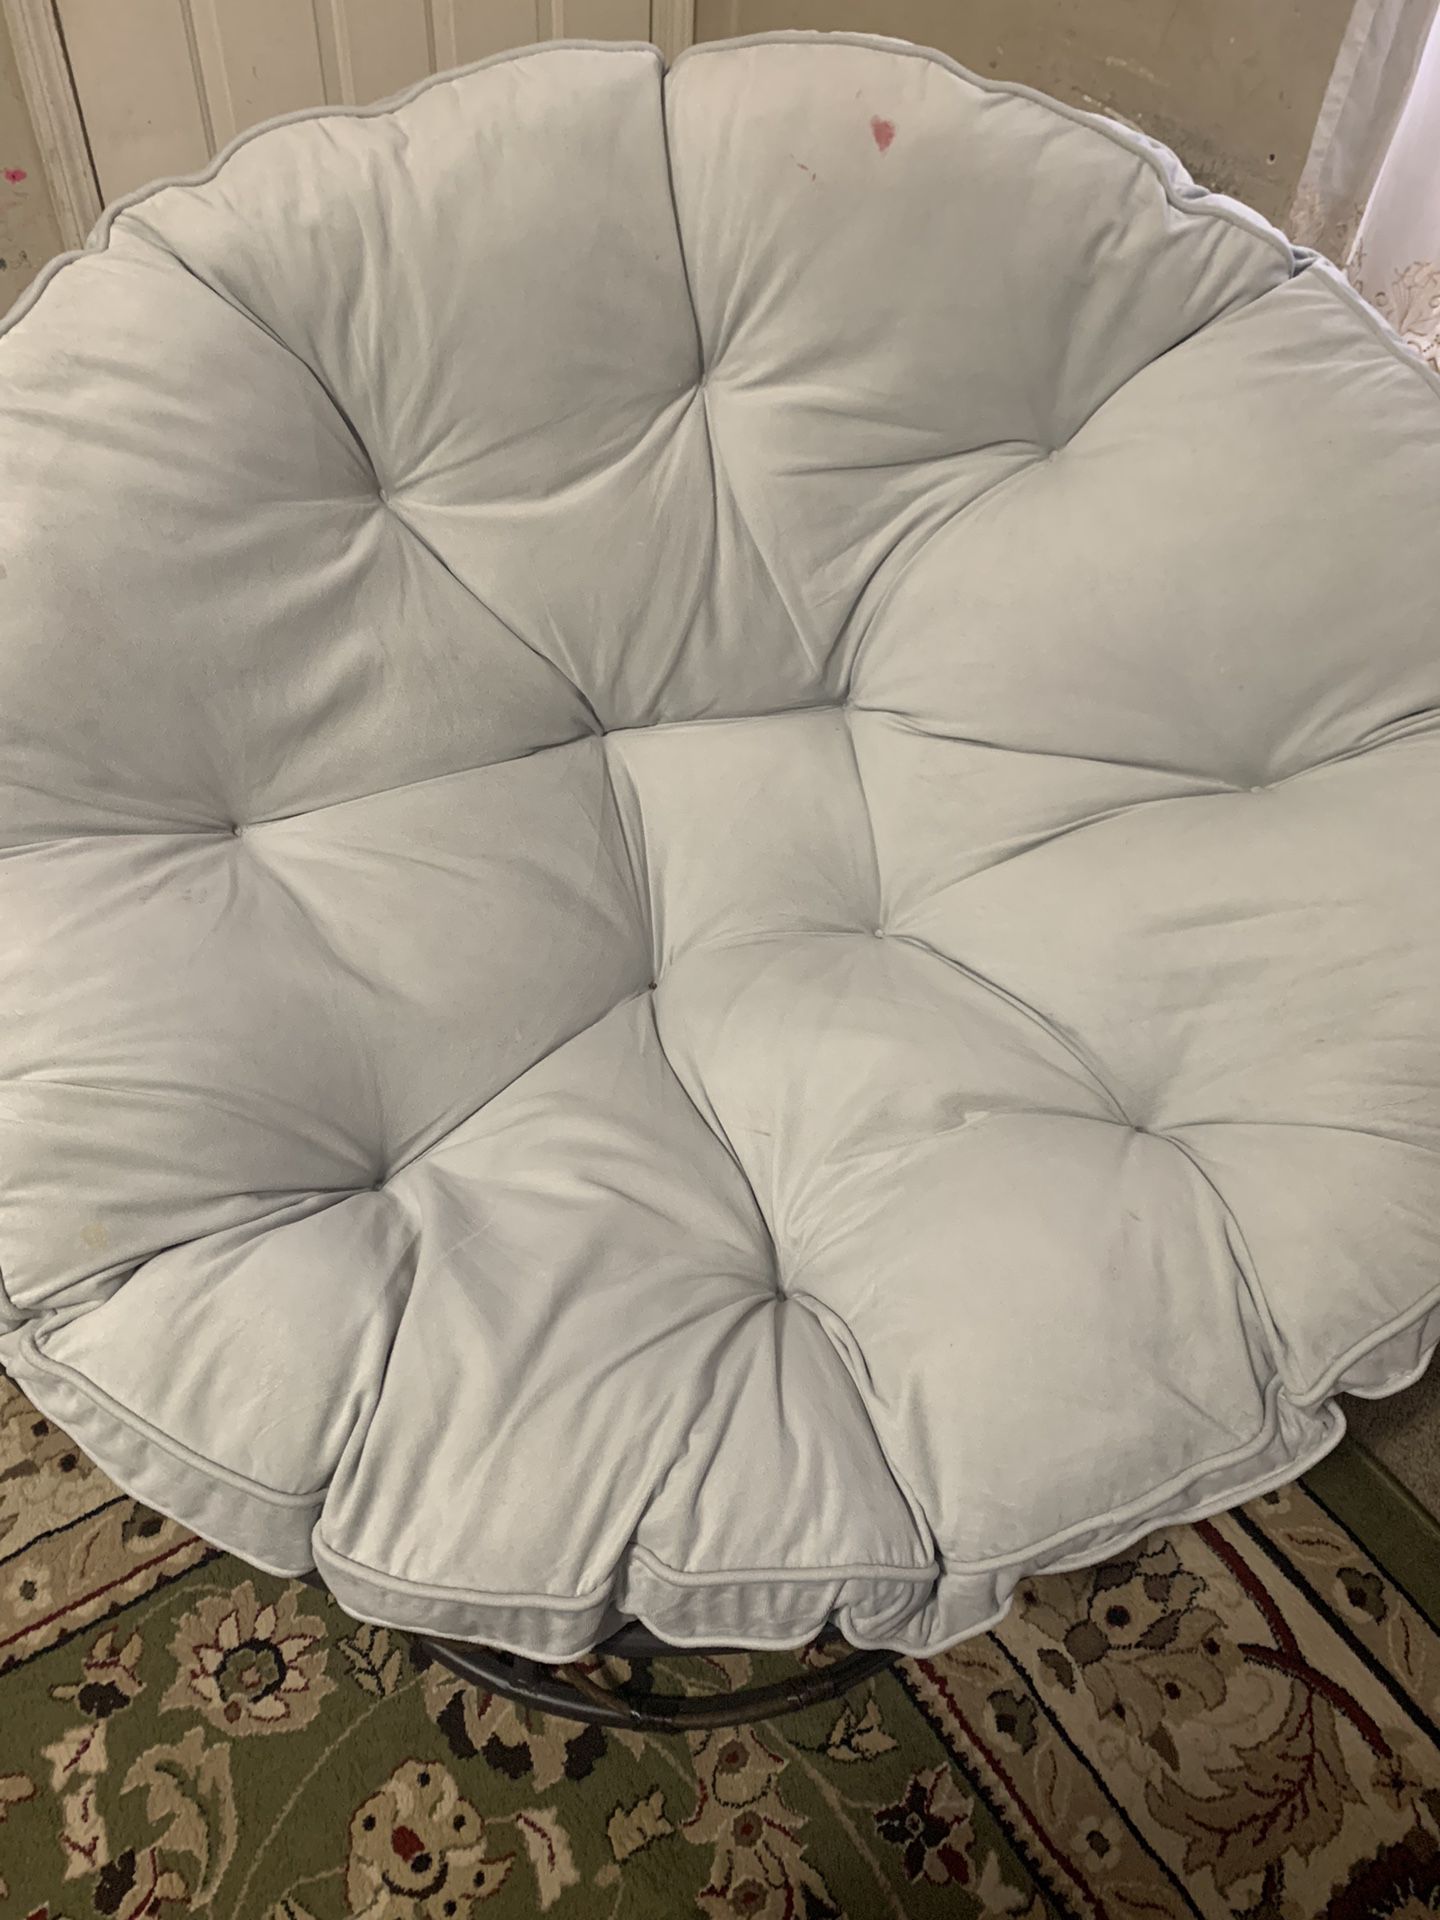 Round Chair